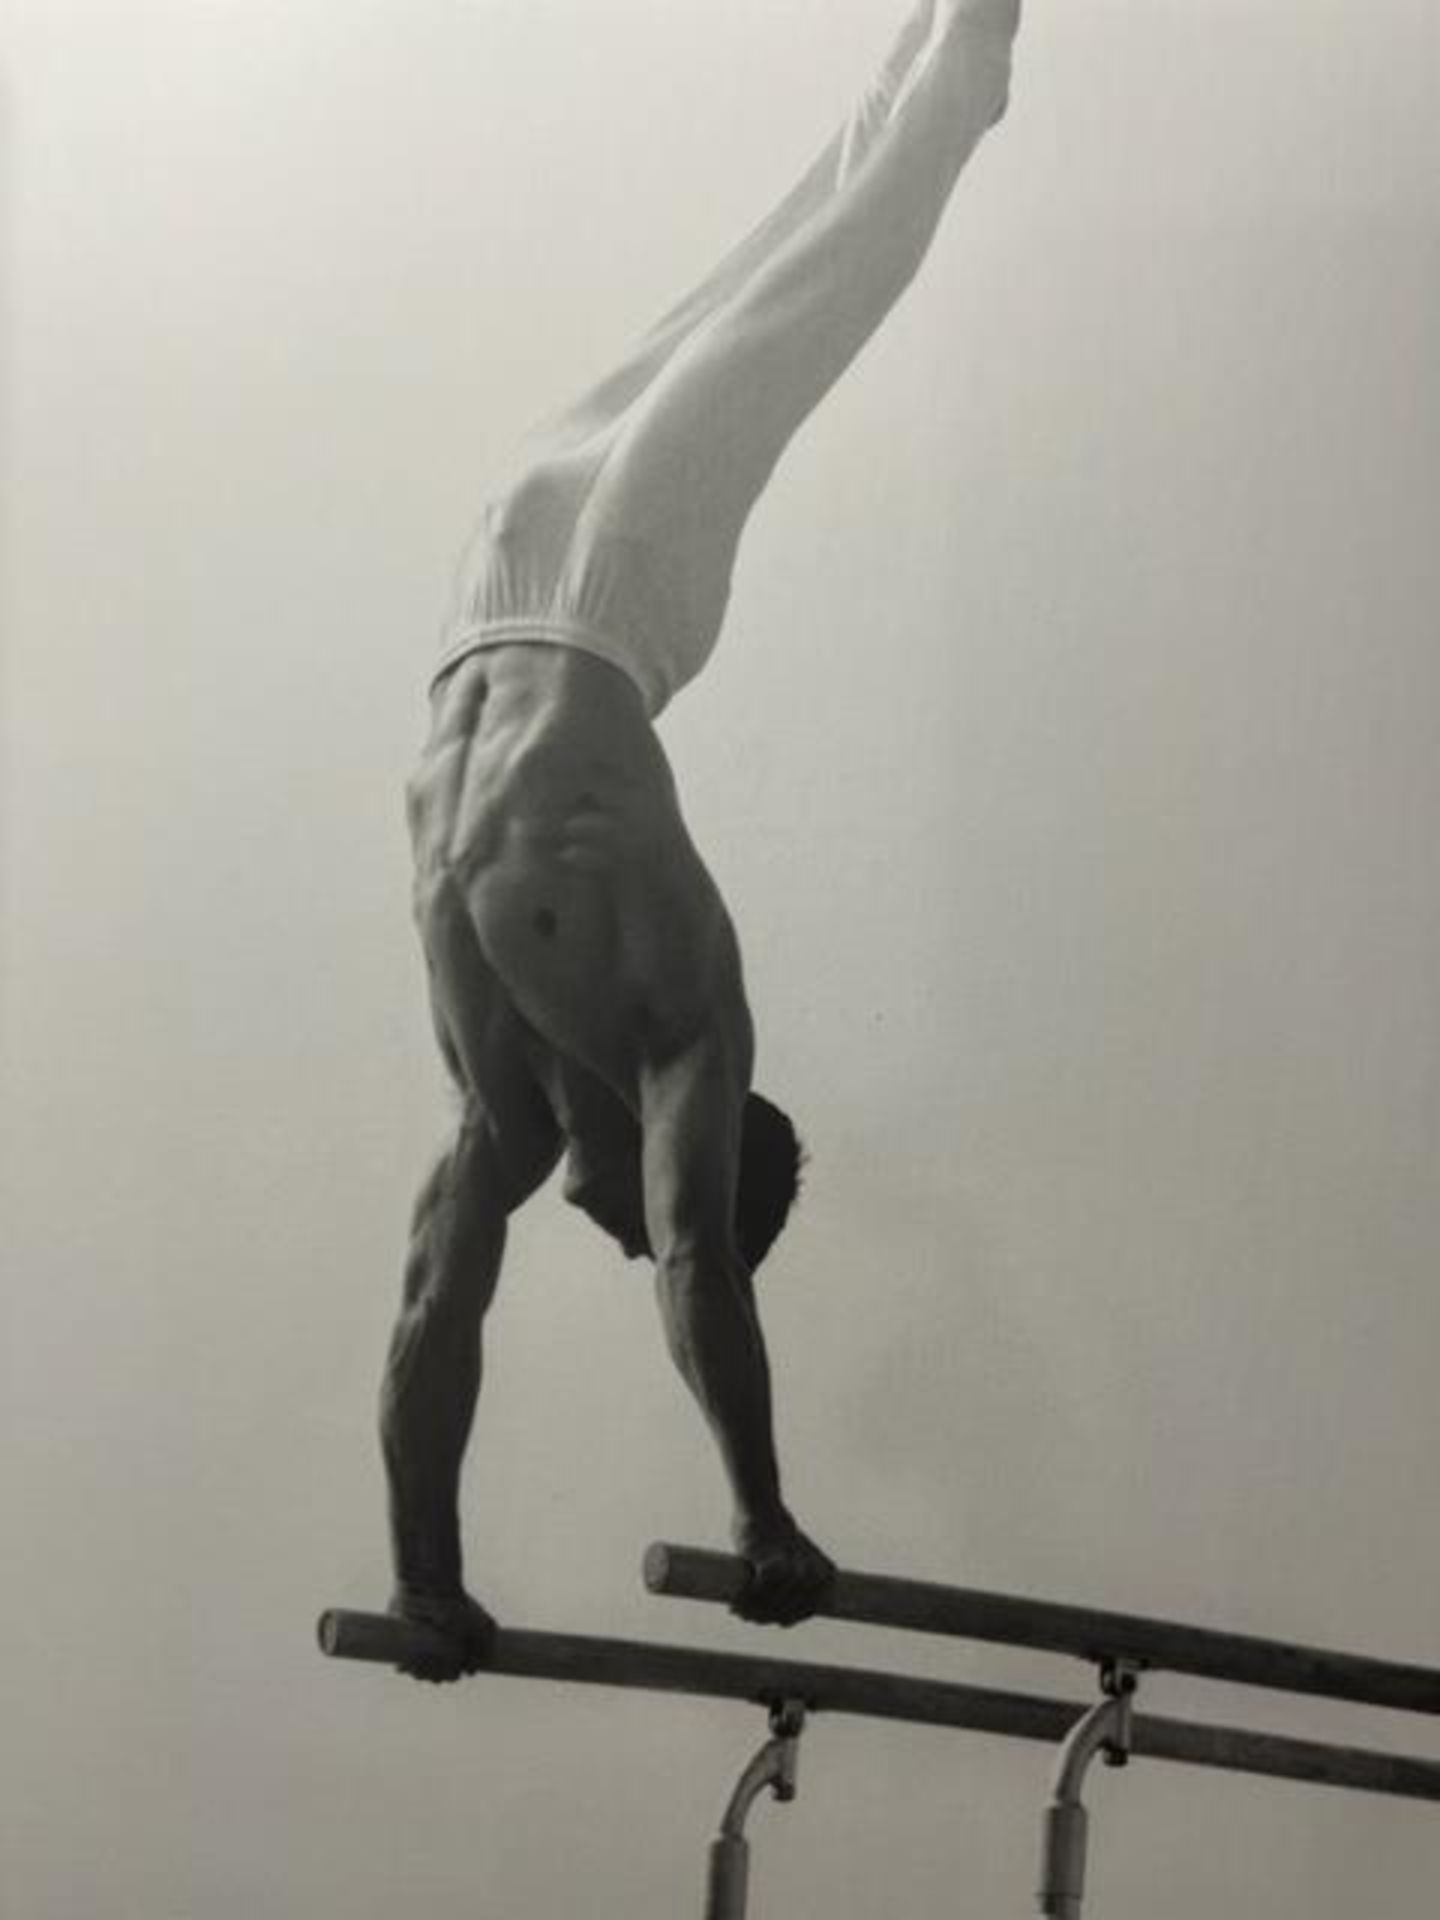 Annie Leibovitz "Untitled" Print.